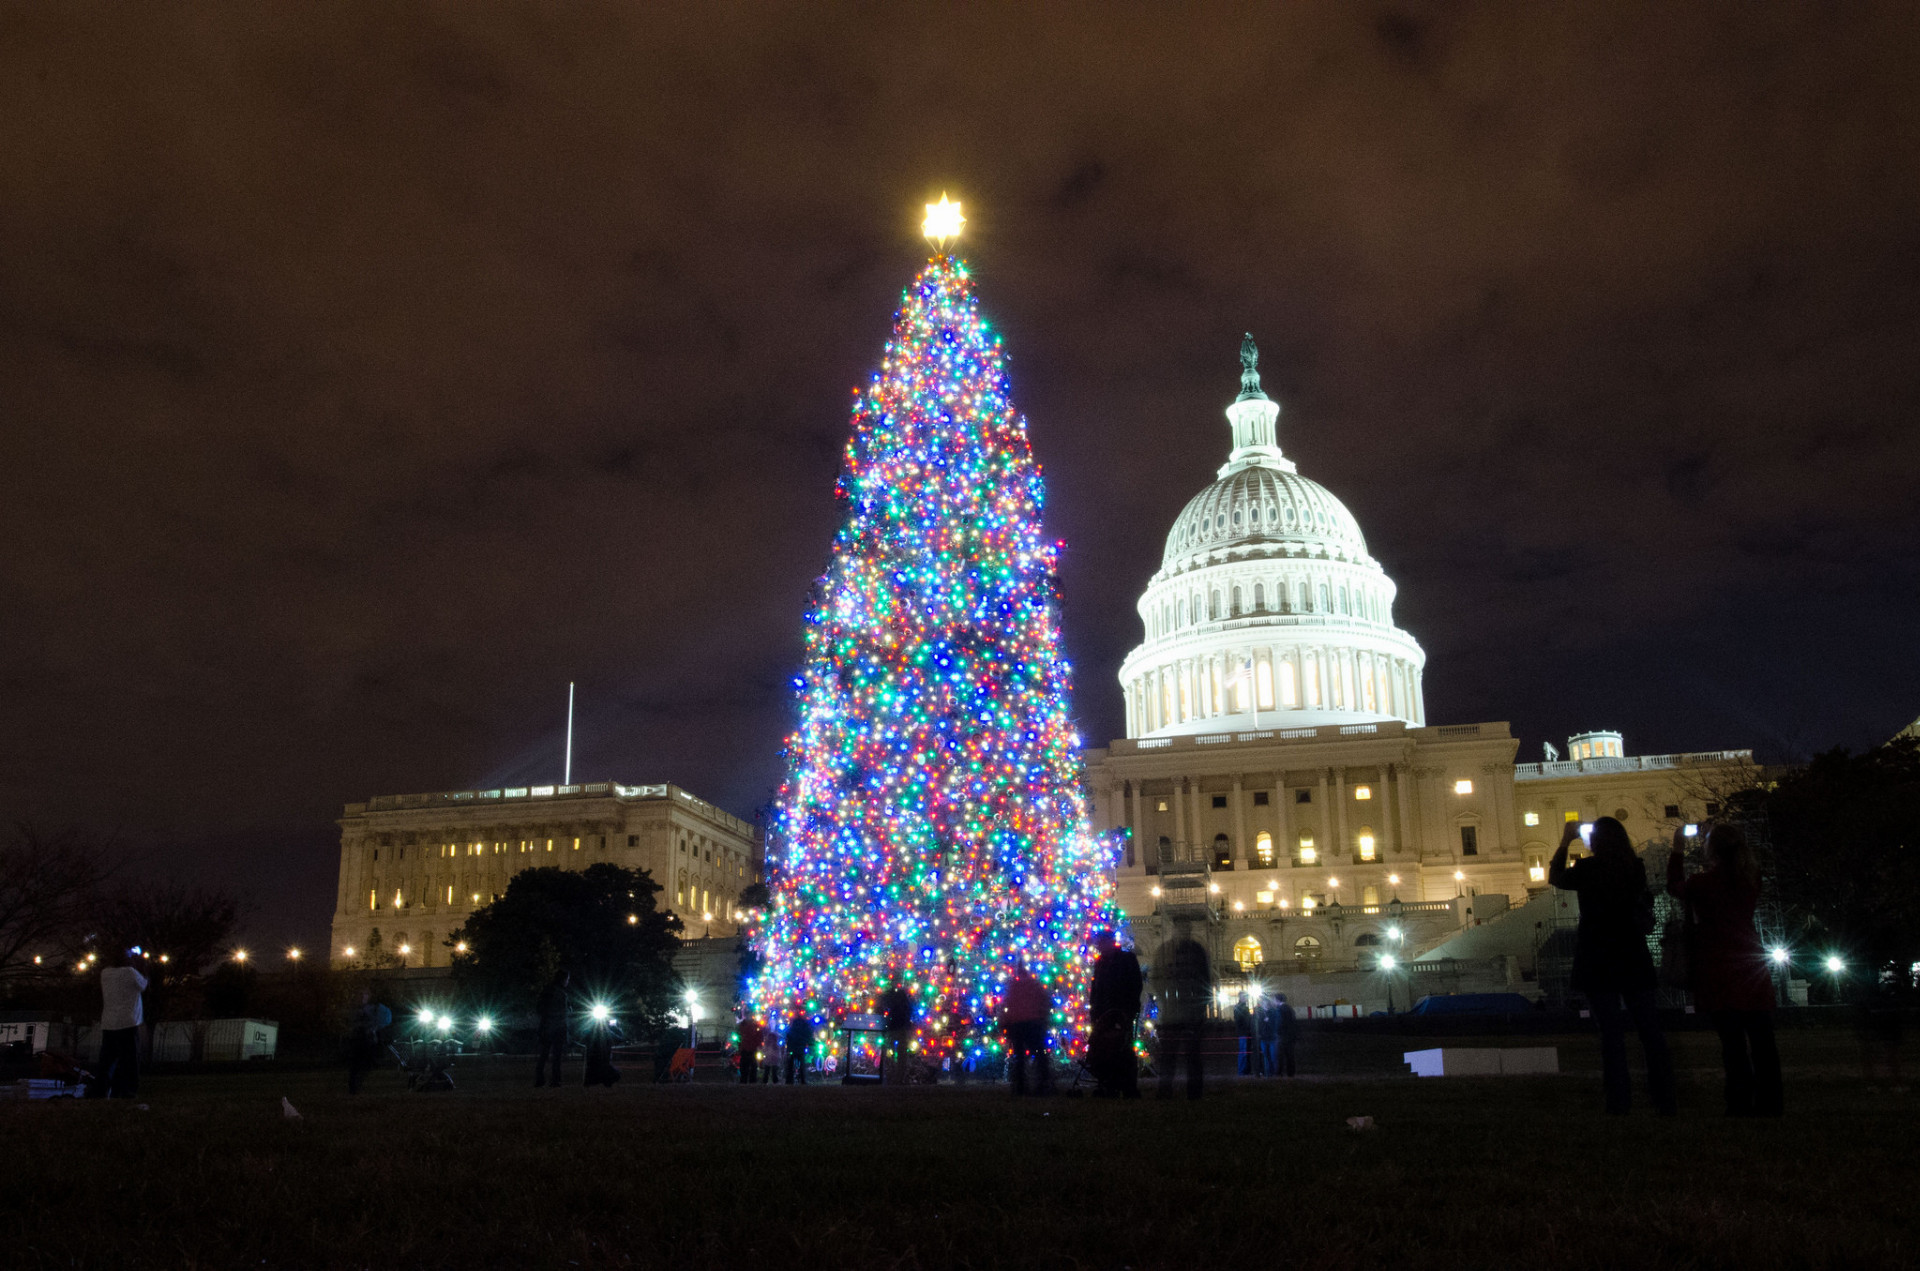 V tomto americkom meste si určite nenechajte ujsť obrovský vianočný stromček. Zoologická záhrada počas zimy usporadúva veľkolepú svetelnú šou. Biely dom a Lincolnov pamätník pokryté snehom vyzerajú obzvlášť nádherne. Washington každý rok počas zimných mesiacov uvádza obľúbené baletné predstavenie Luskáčik.